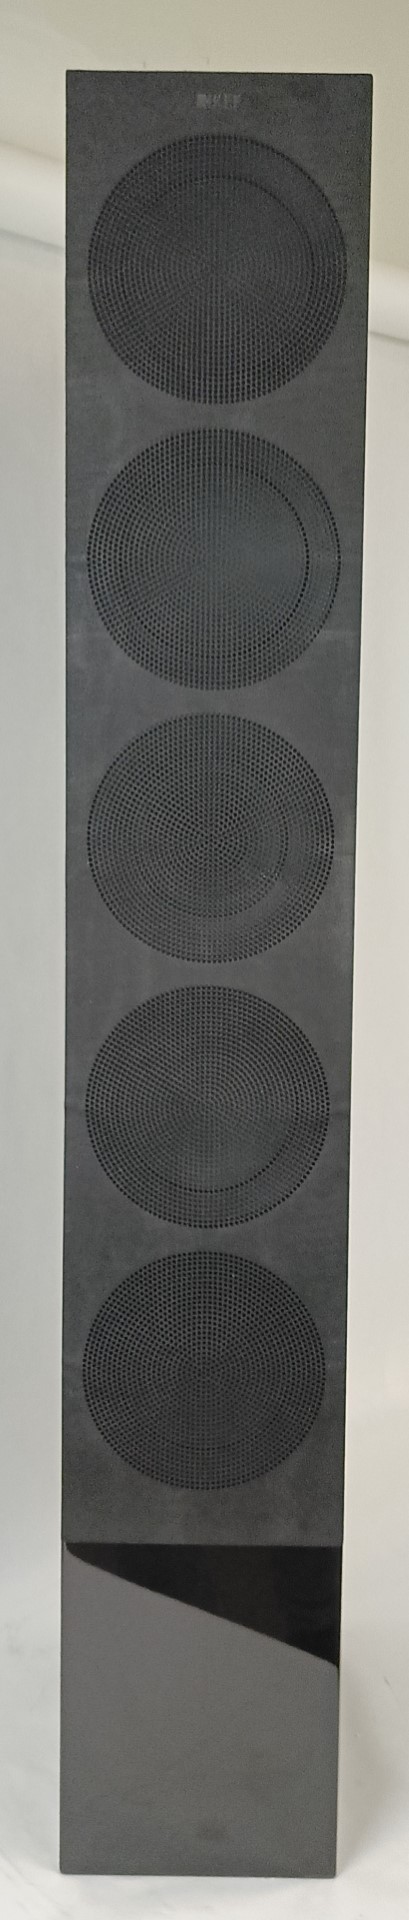 KEF R11 Floorstanding Loudspeaker with Grille (Each) Gloss Black - Read - 5N41